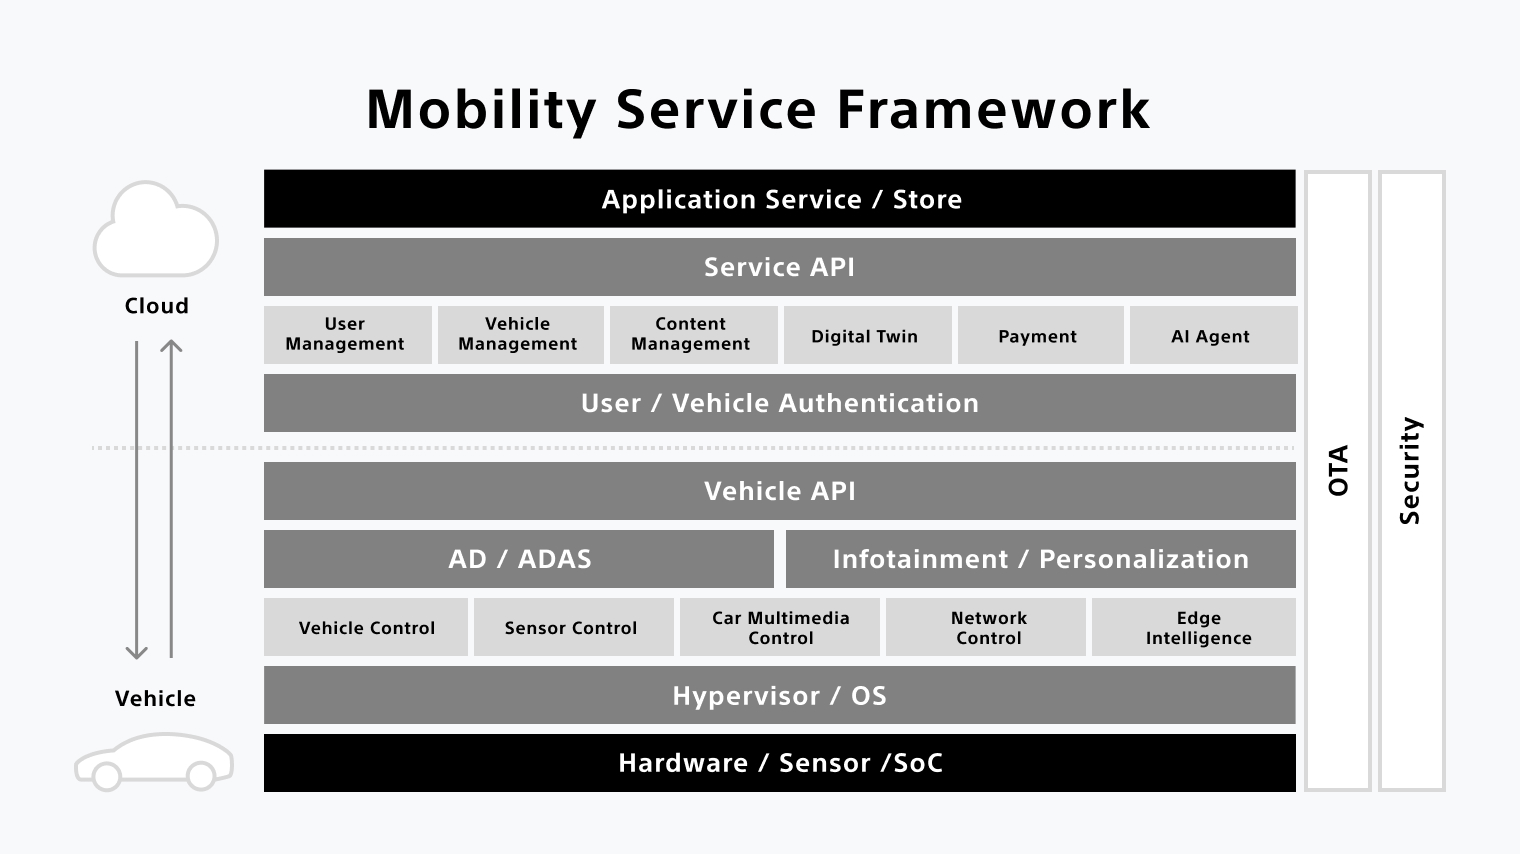 AFEELAのモビリティサービスのフレームワークを示した図説